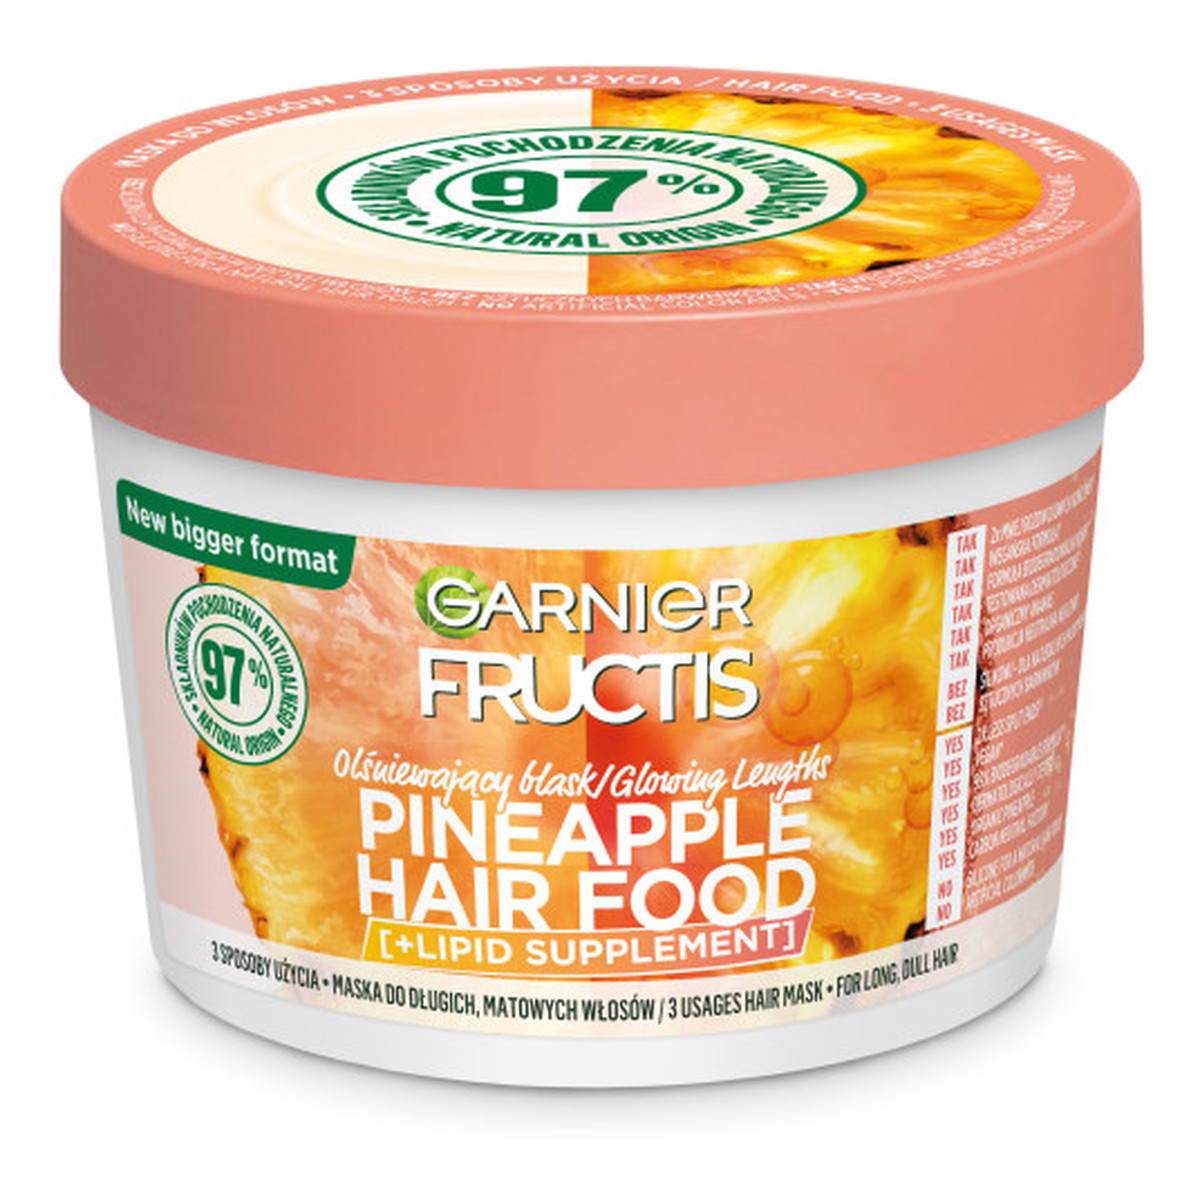 Garnier Fructis pineapple hair food maska do włosów długich i matowych 400ml